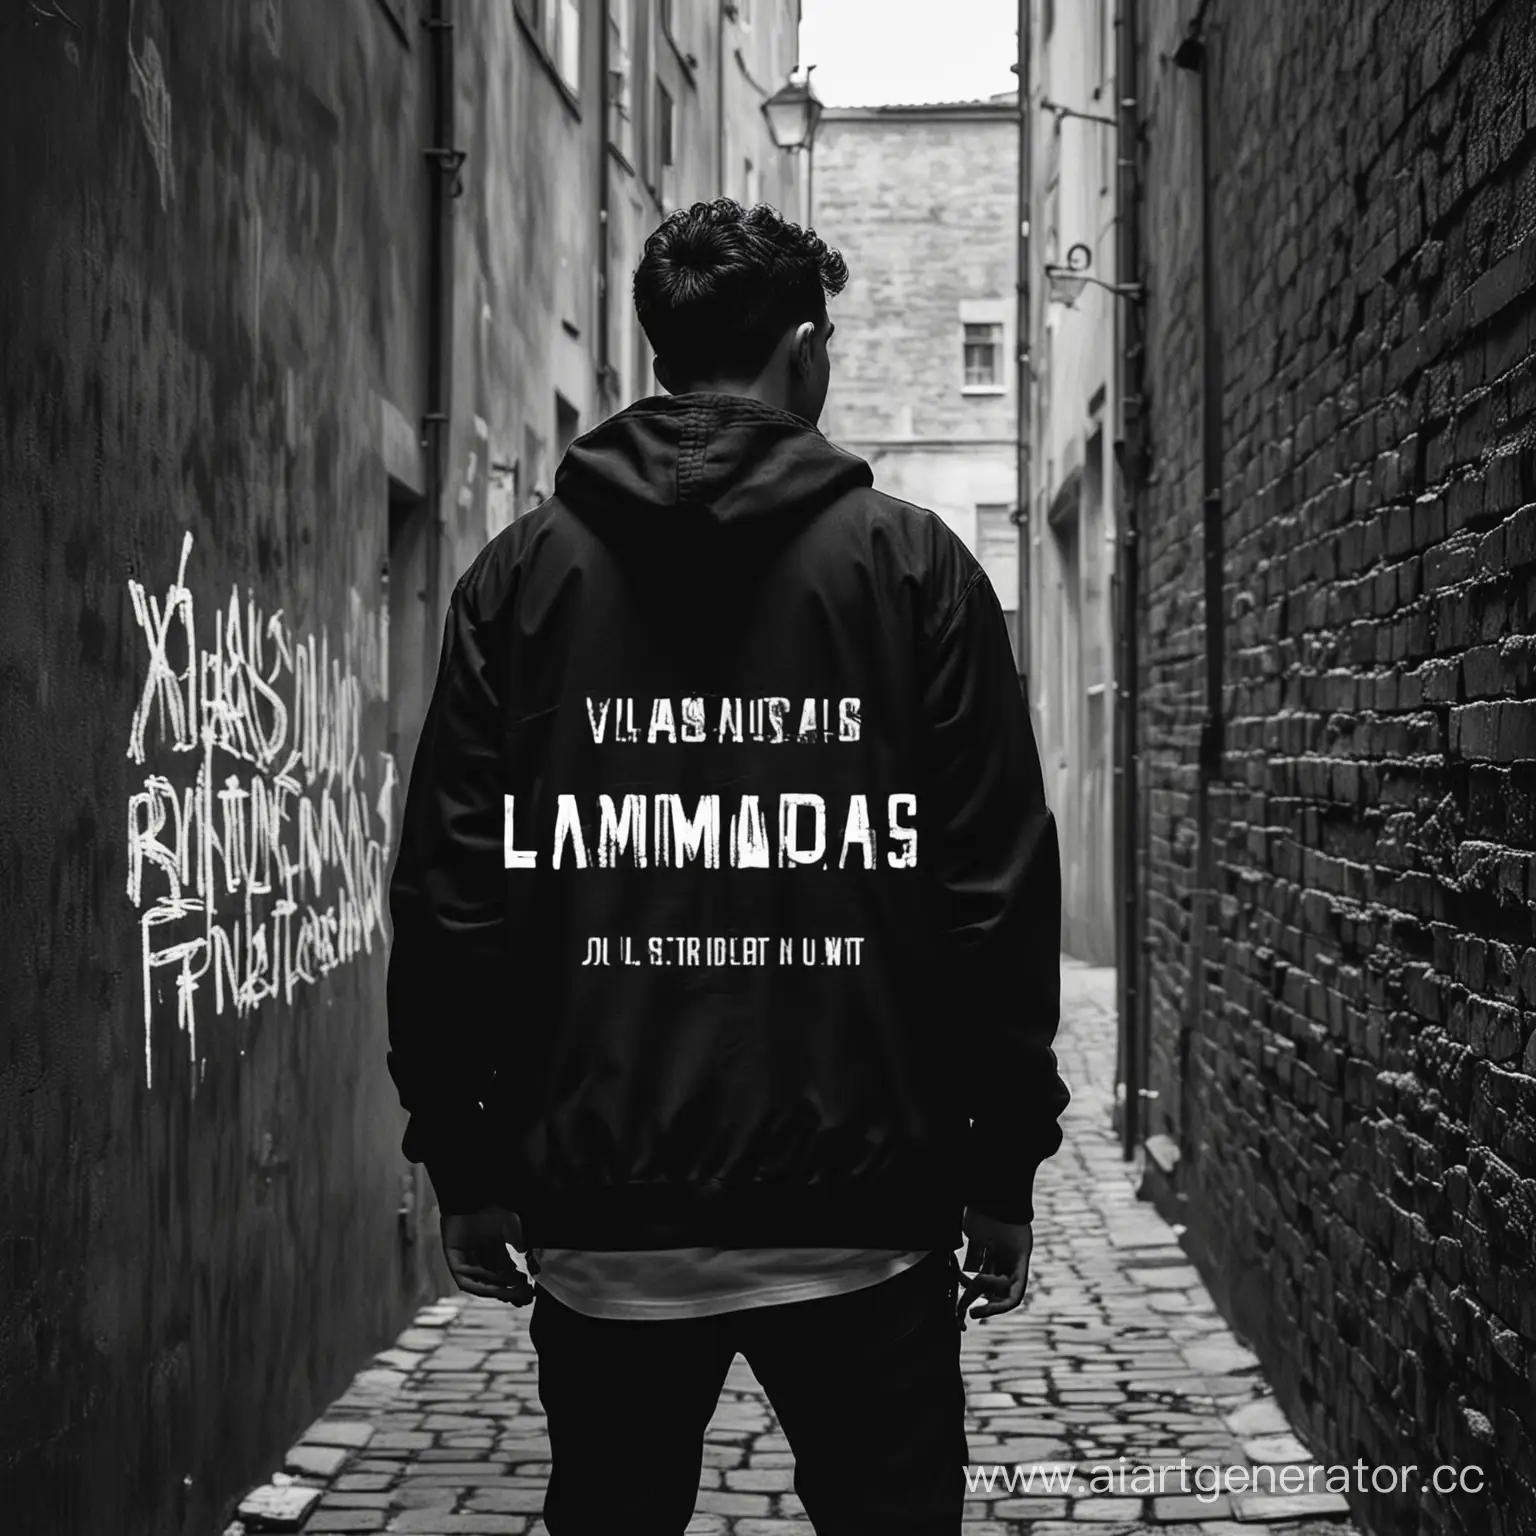 Обложка для песни в рэп исполнении на которой молодой парень стоит спиной в темном переулке с надписью Vladus_Marmeladus